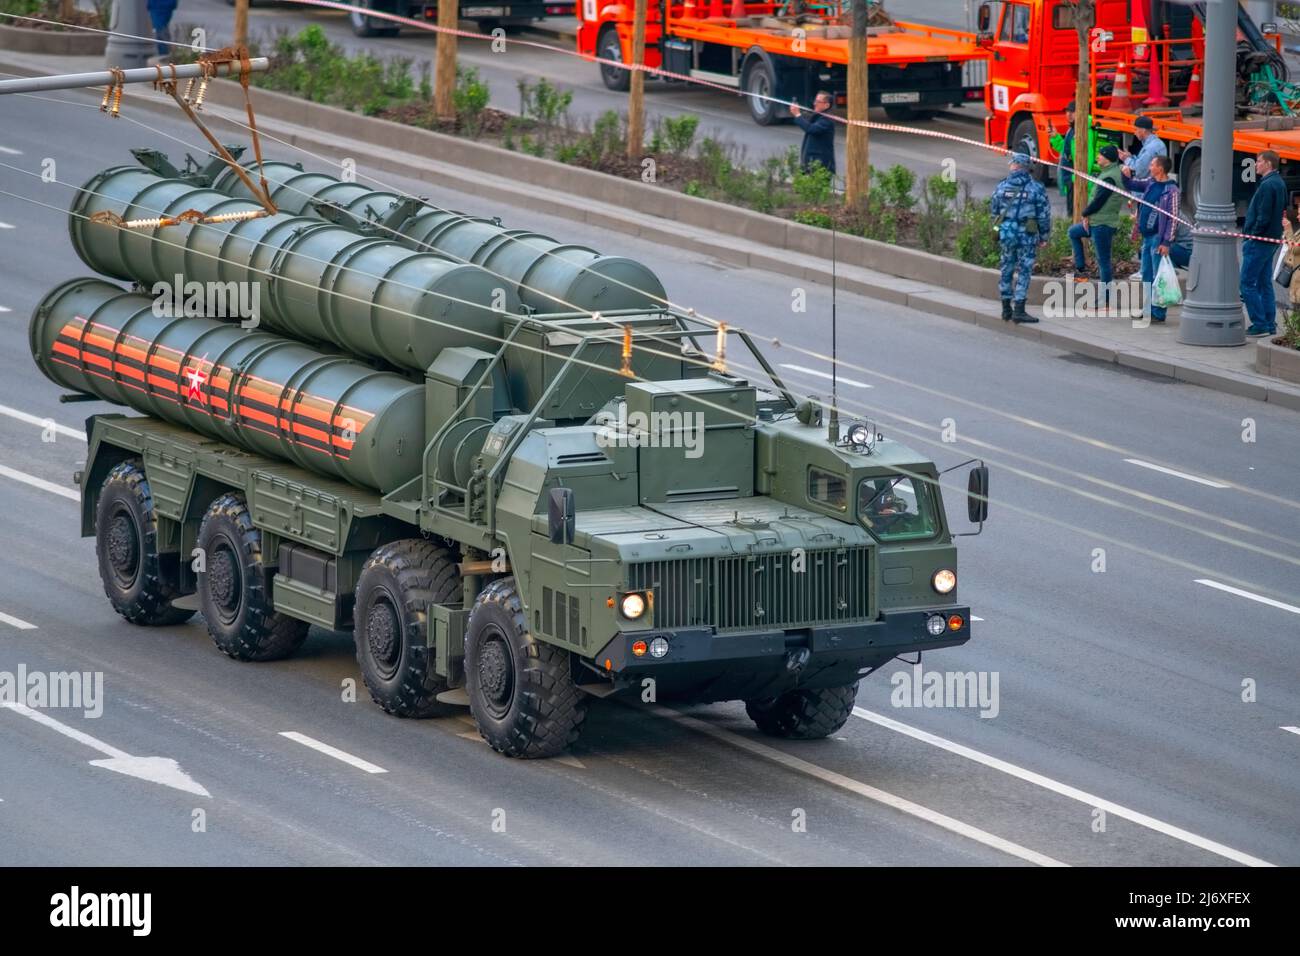 Transporter Erector Launcher Fahrzeug des S-400 Langstreckenraketen-Systems bei der russischen Siegesparade in Moskau Stockfoto